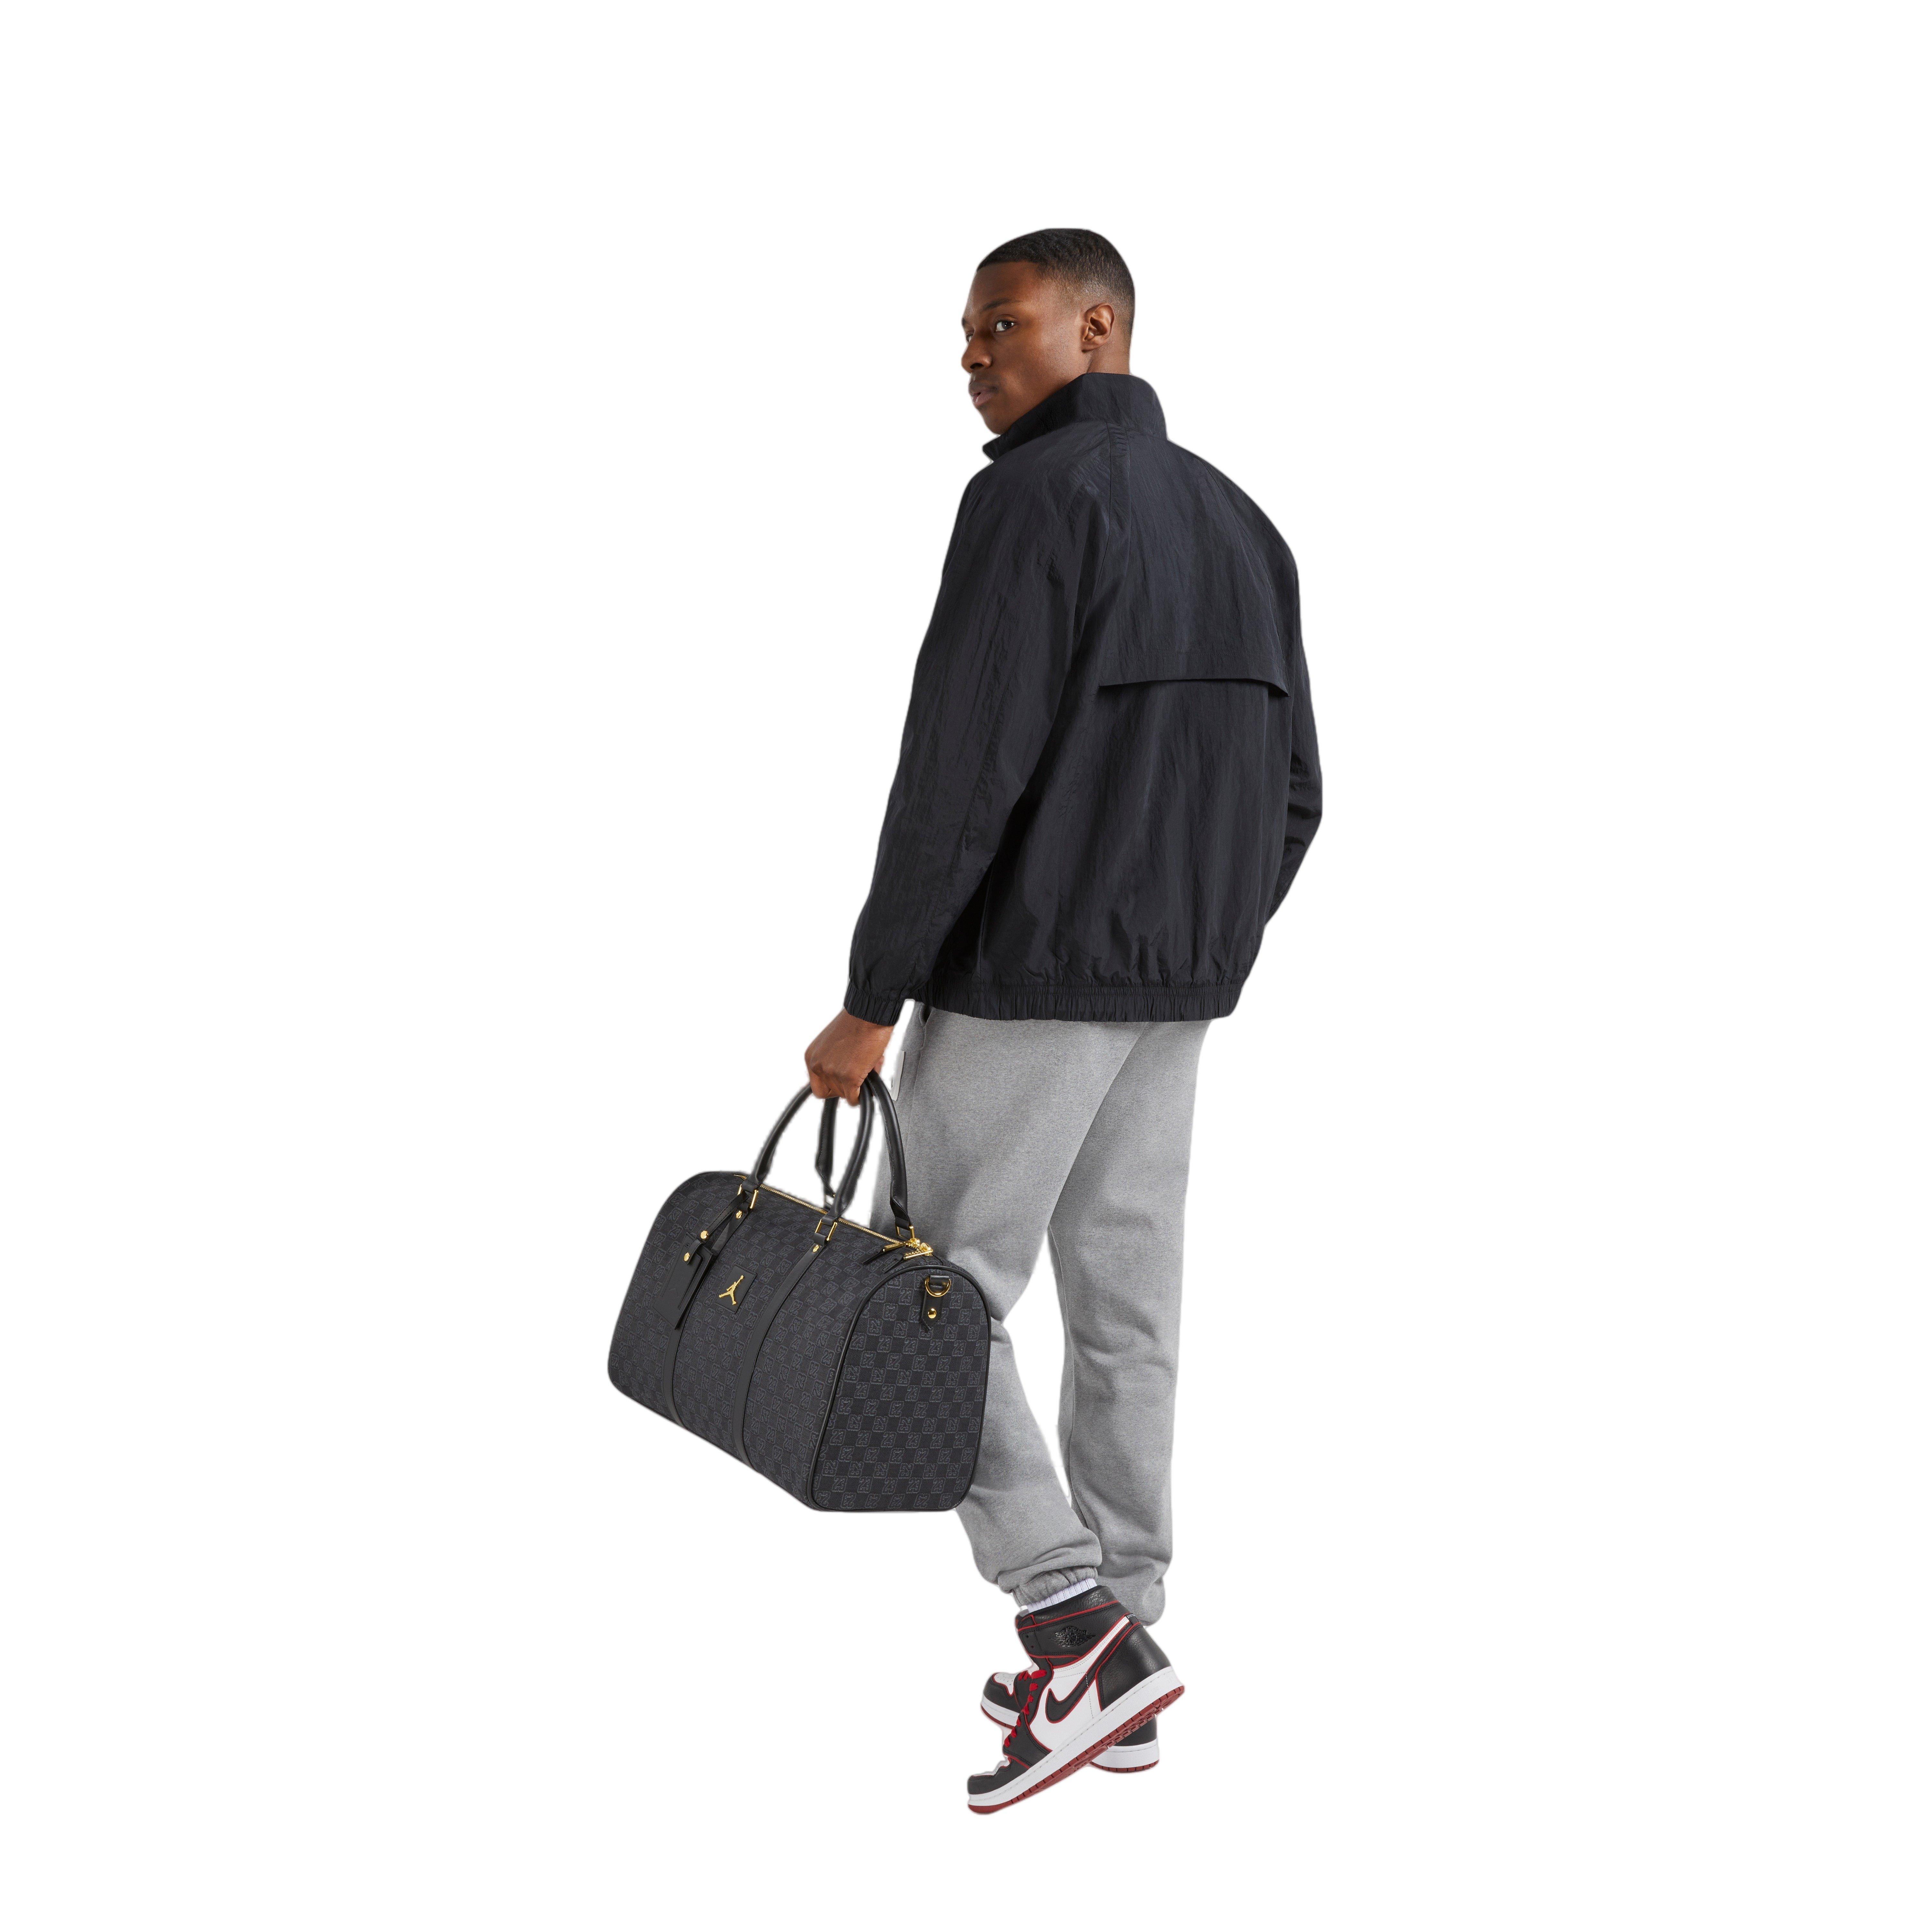 Duffle bag Jordan Monogram Duffle Bag Black